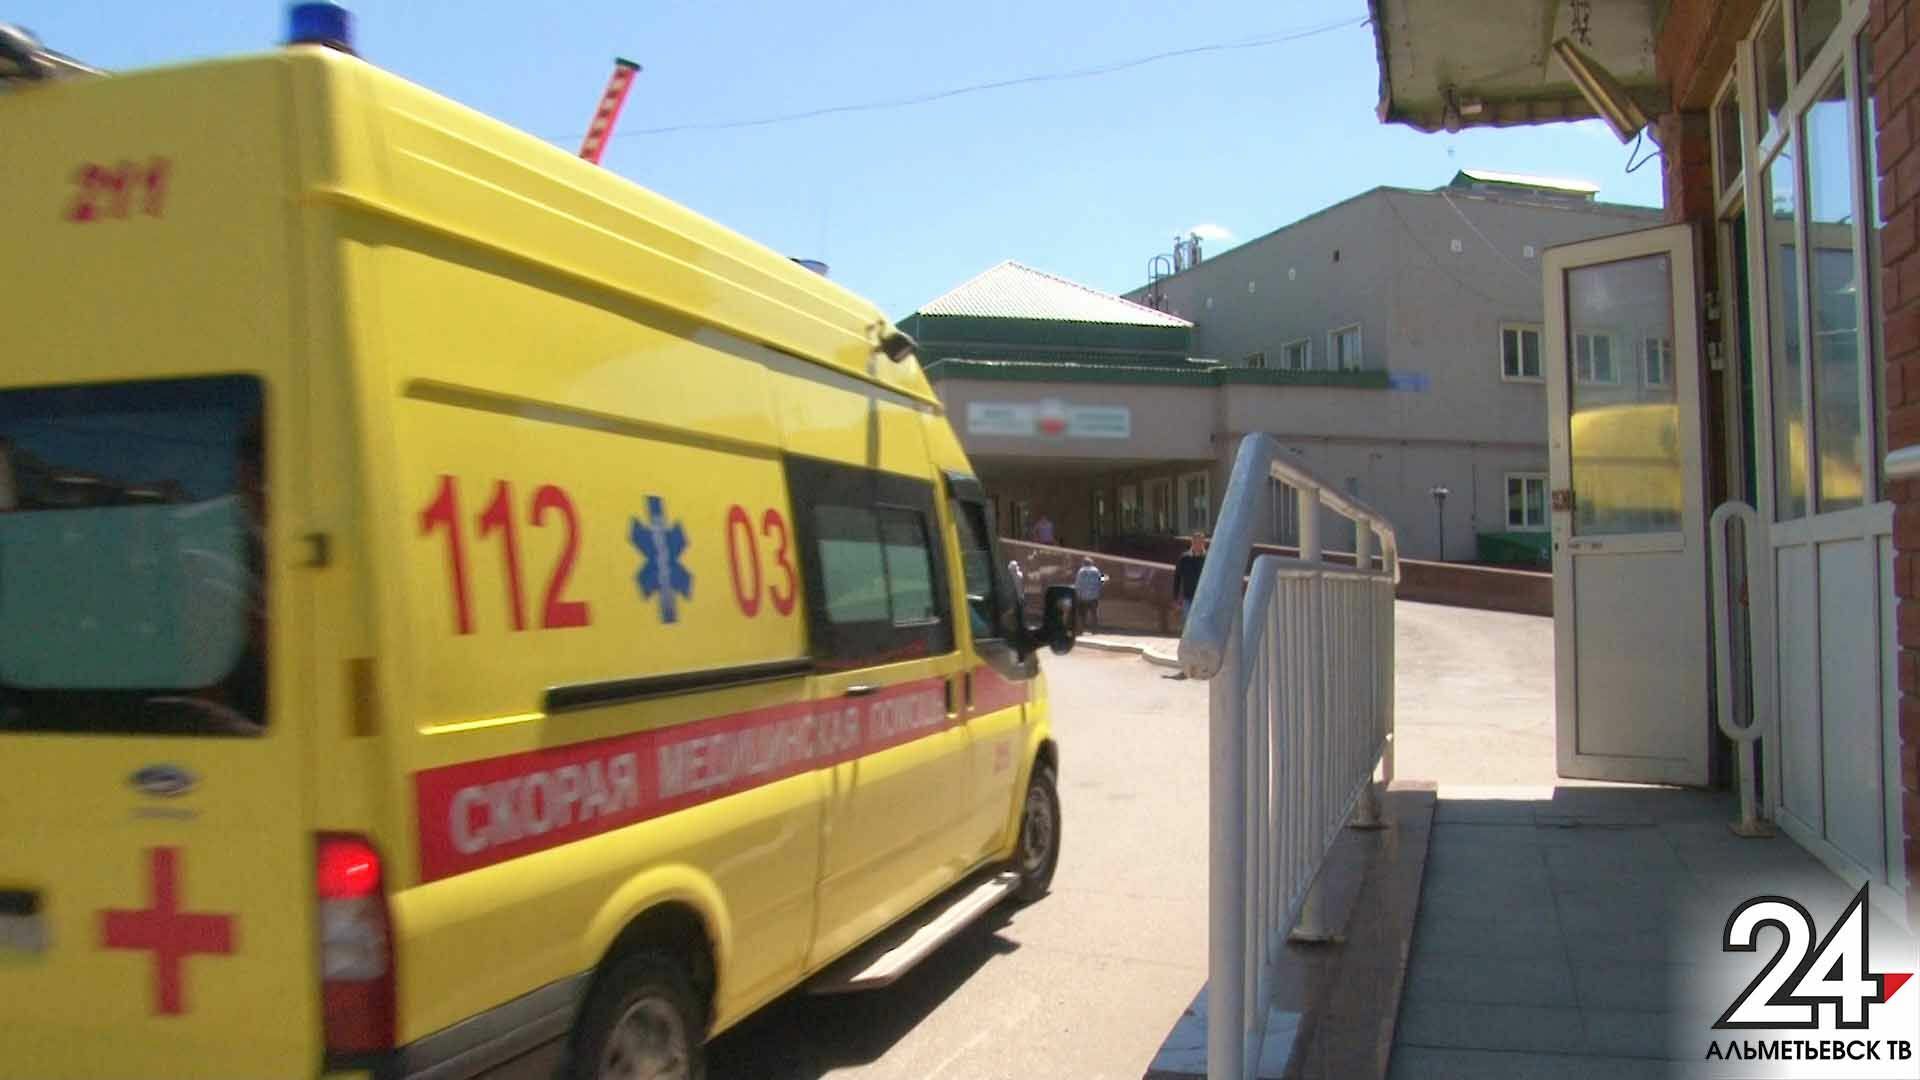 Ребенка из психоневрологического санатория в Татарстане госпитализировали с кишечной инфекцией